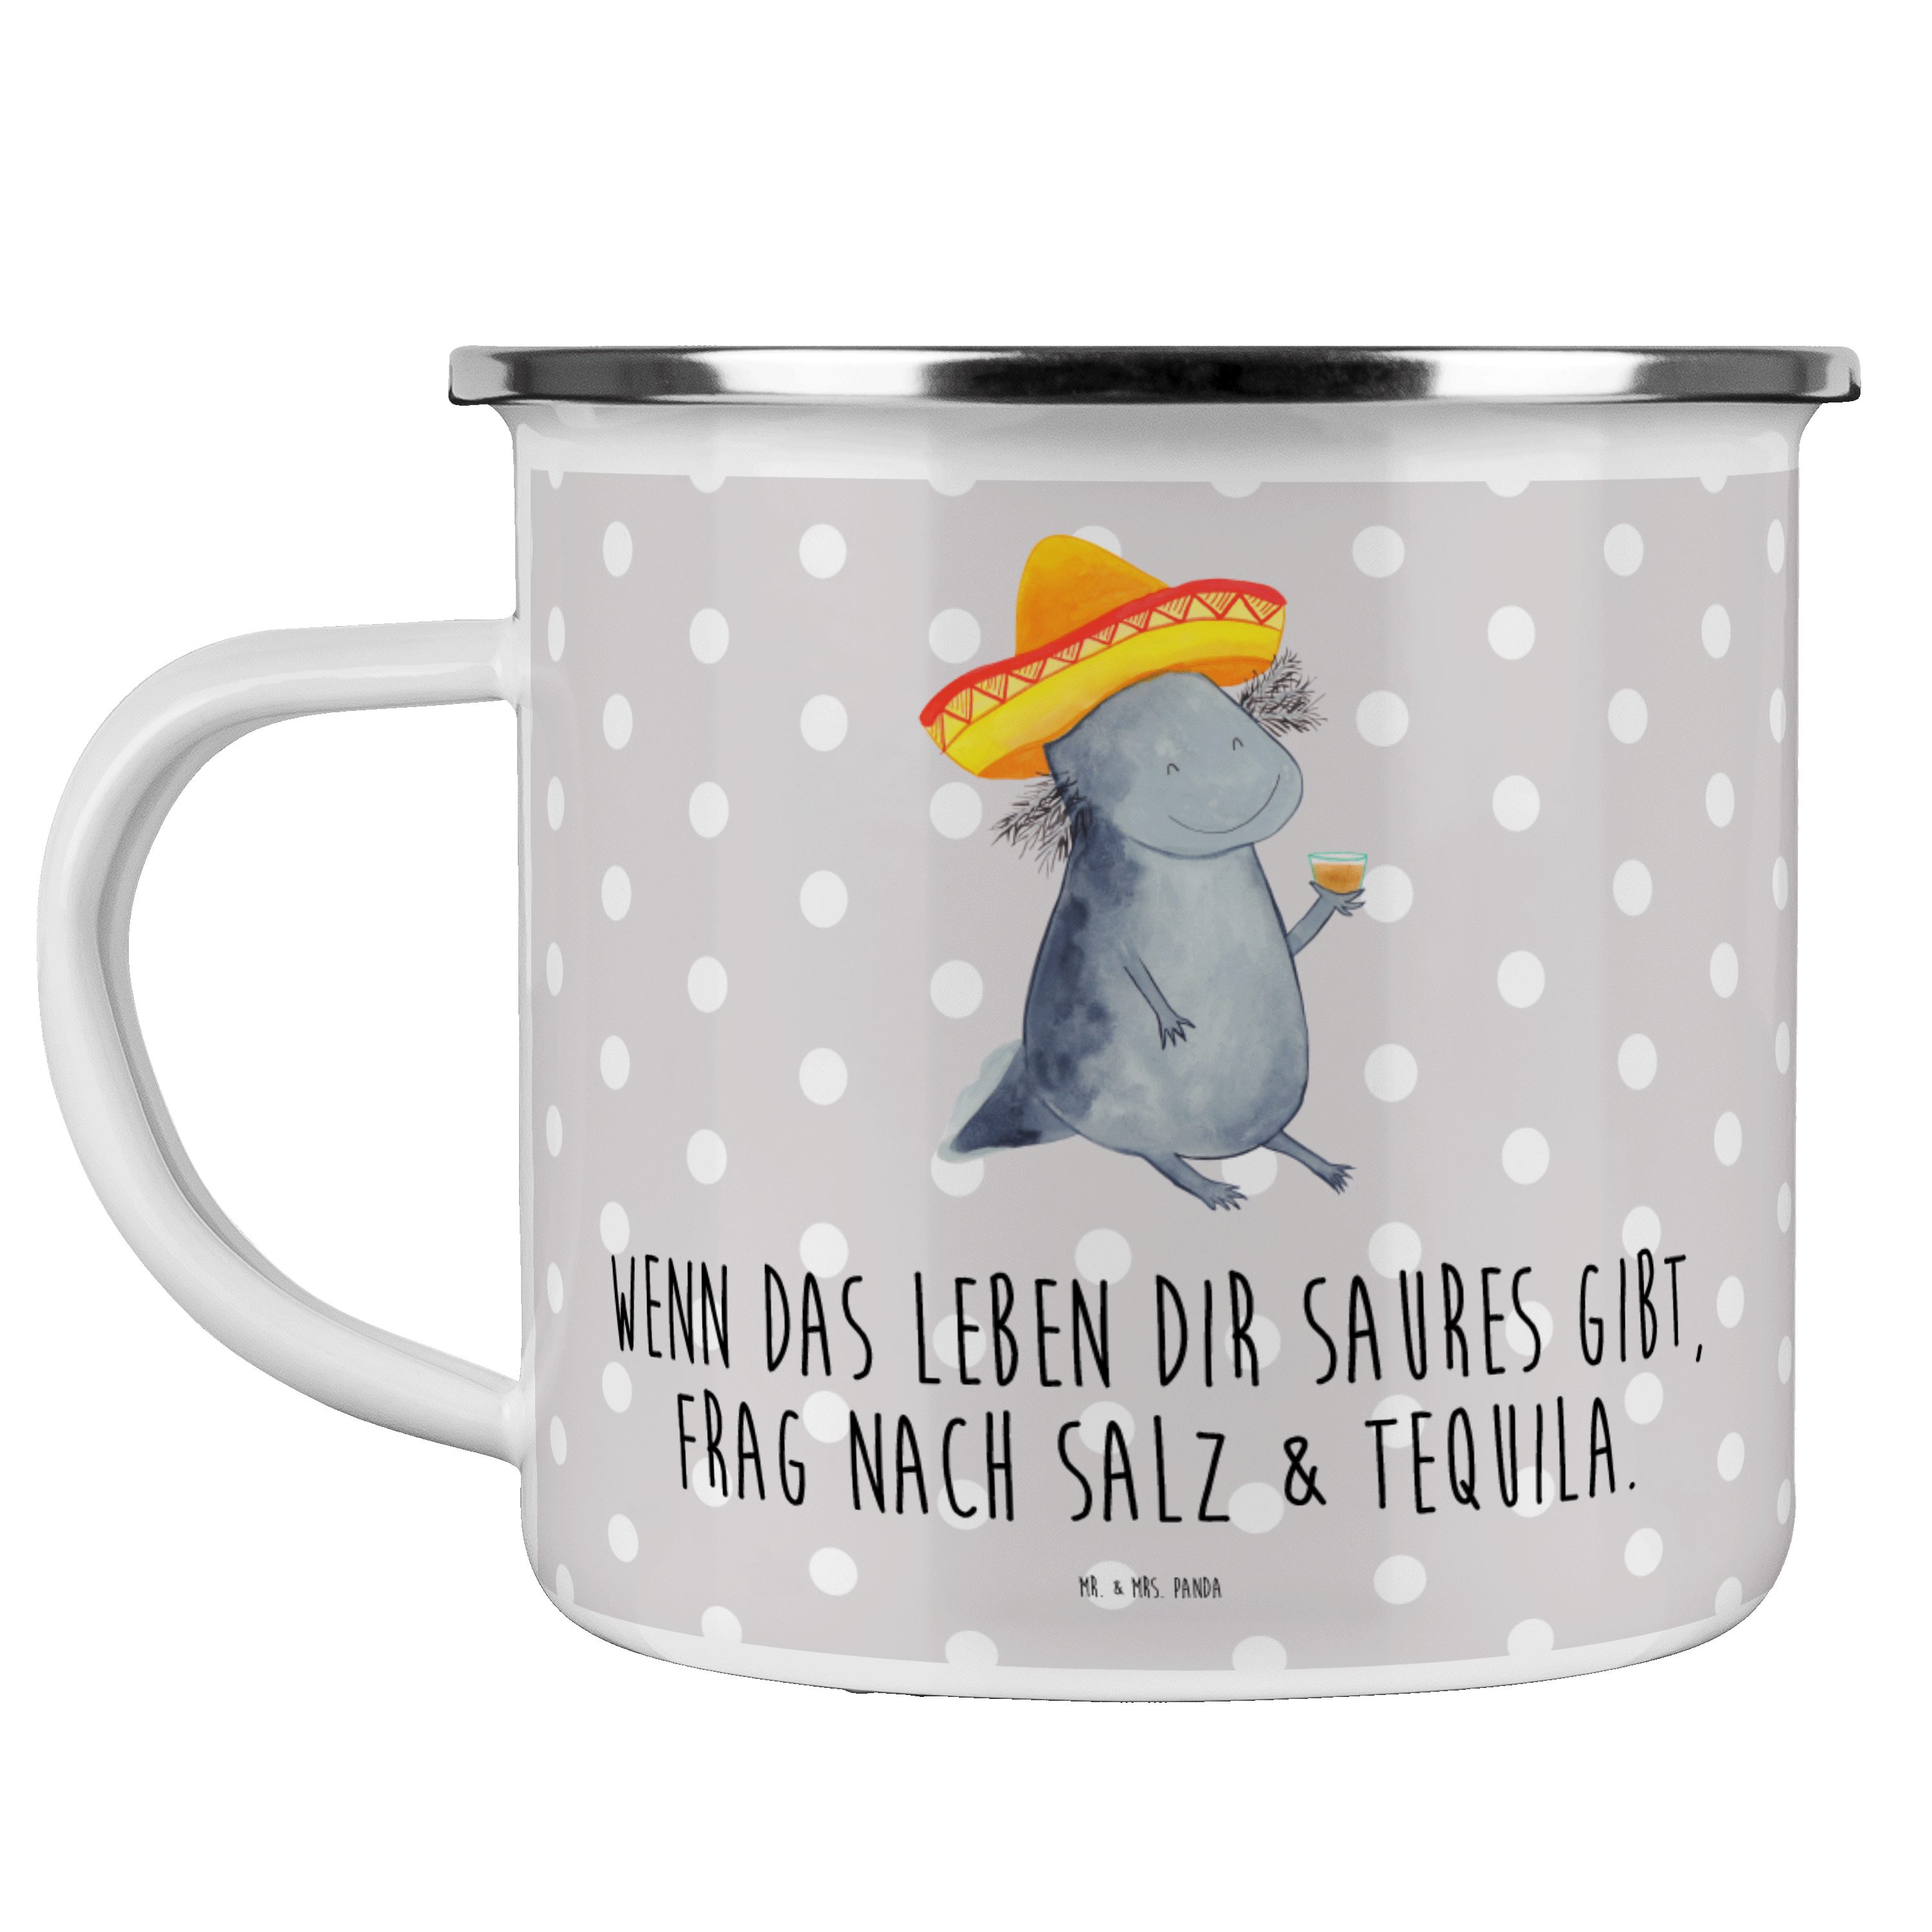 Mr. & Mrs. Panda Becher Axolotl Tequila - Grau Pastell - Geschenk, party, Feuerdrache, Blecht, Emaille